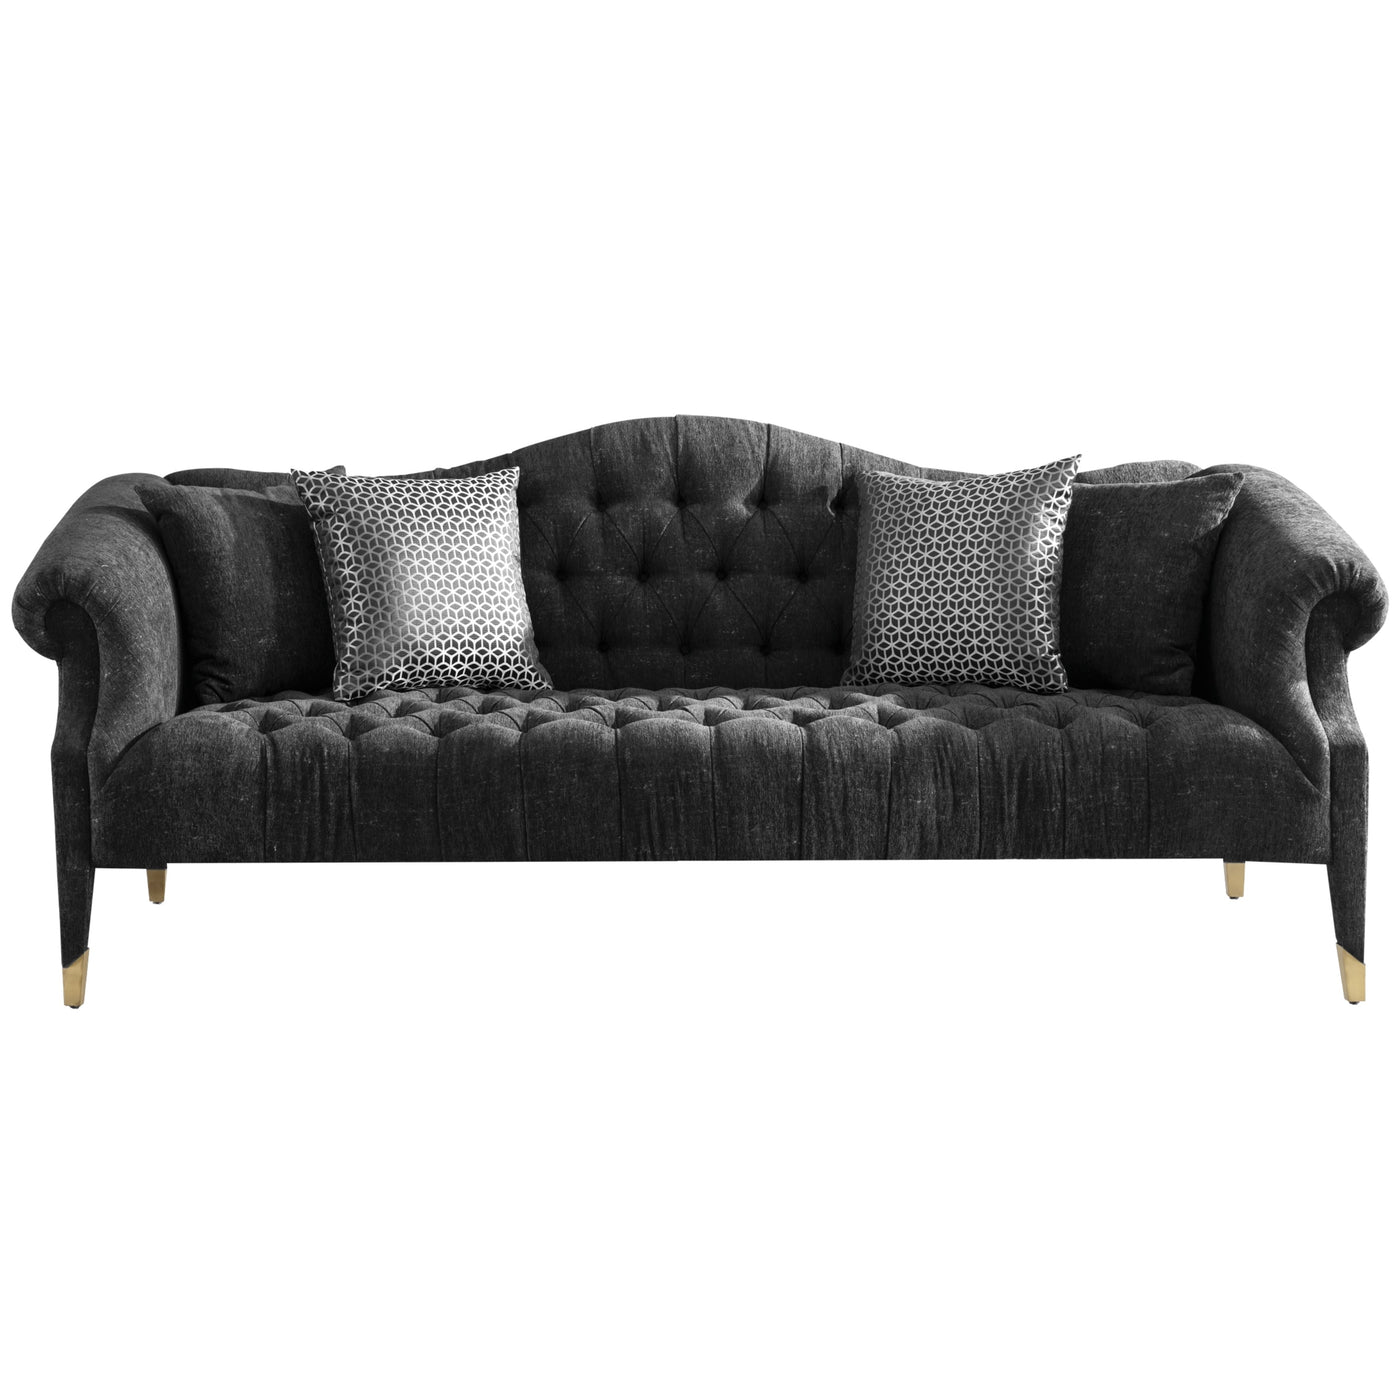 Zuchelli 3 Seater Sofa - Future Classics Furniture